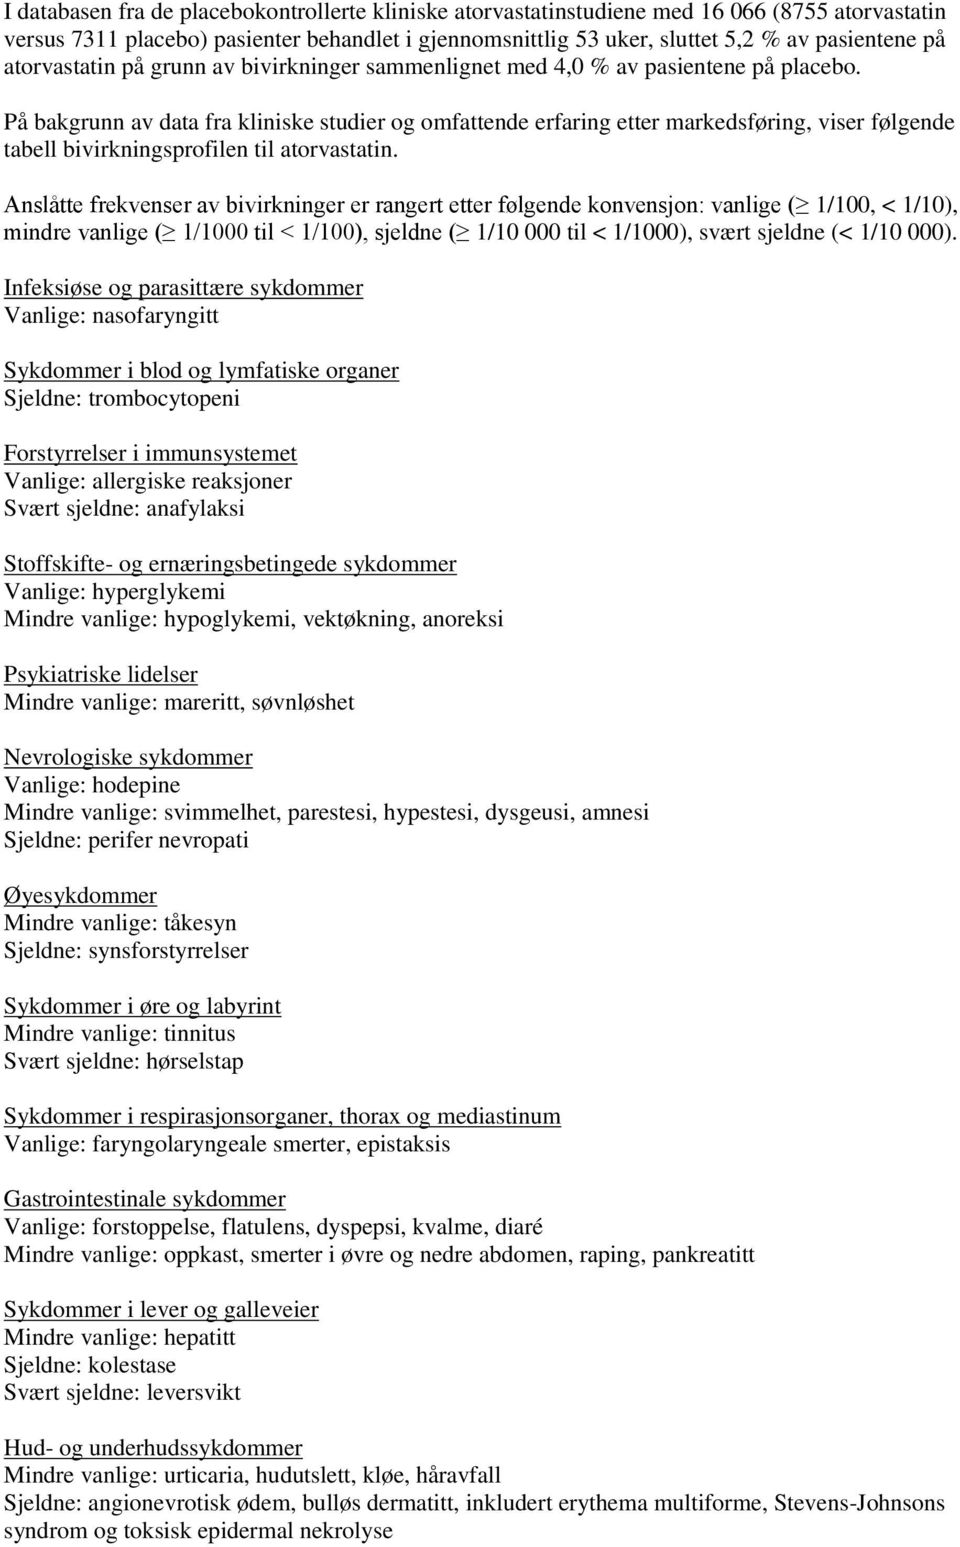 På bakgrunn av data fra kliniske studier og omfattende erfaring etter markedsføring, viser følgende tabell bivirkningsprofilen til atorvastatin.